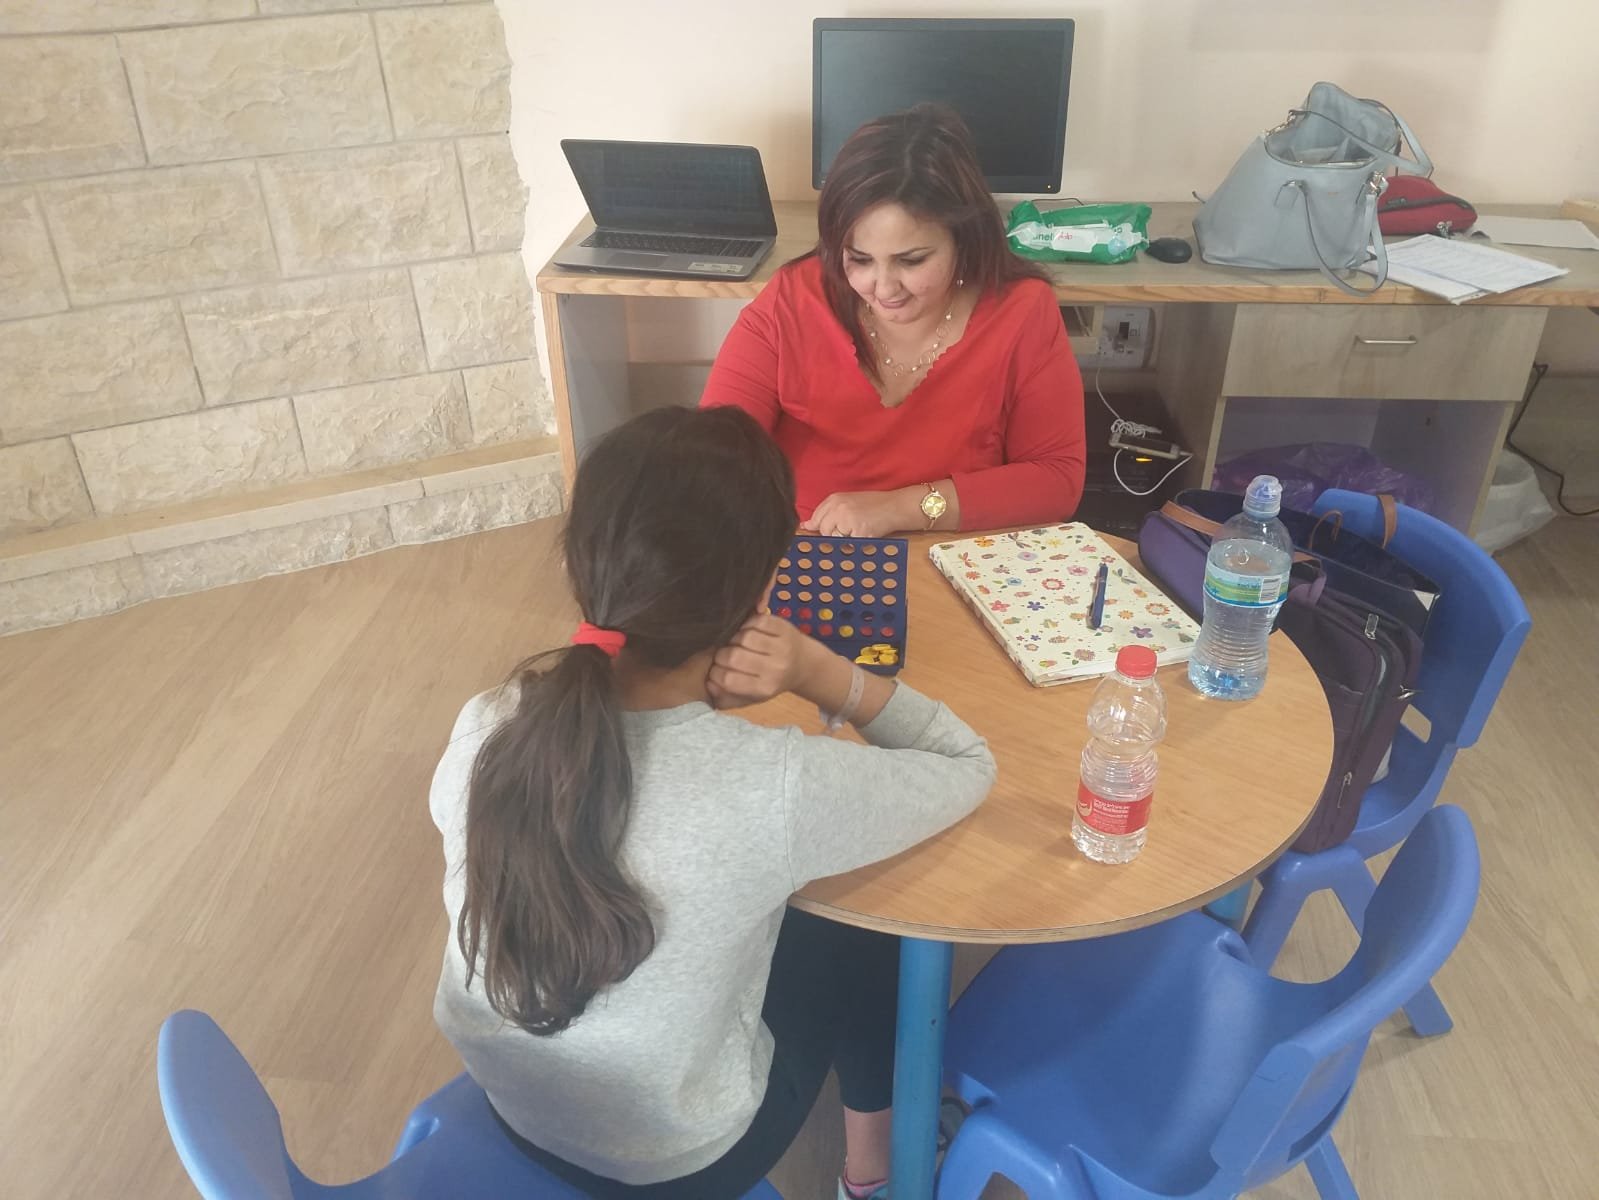 افتتاح صف تعليمي للمتعالجين في قسم جراحة الأطفال في مستشفى الناصرة الانجليزي بإدارة مدرسة سوا للتعليم الخاص-1